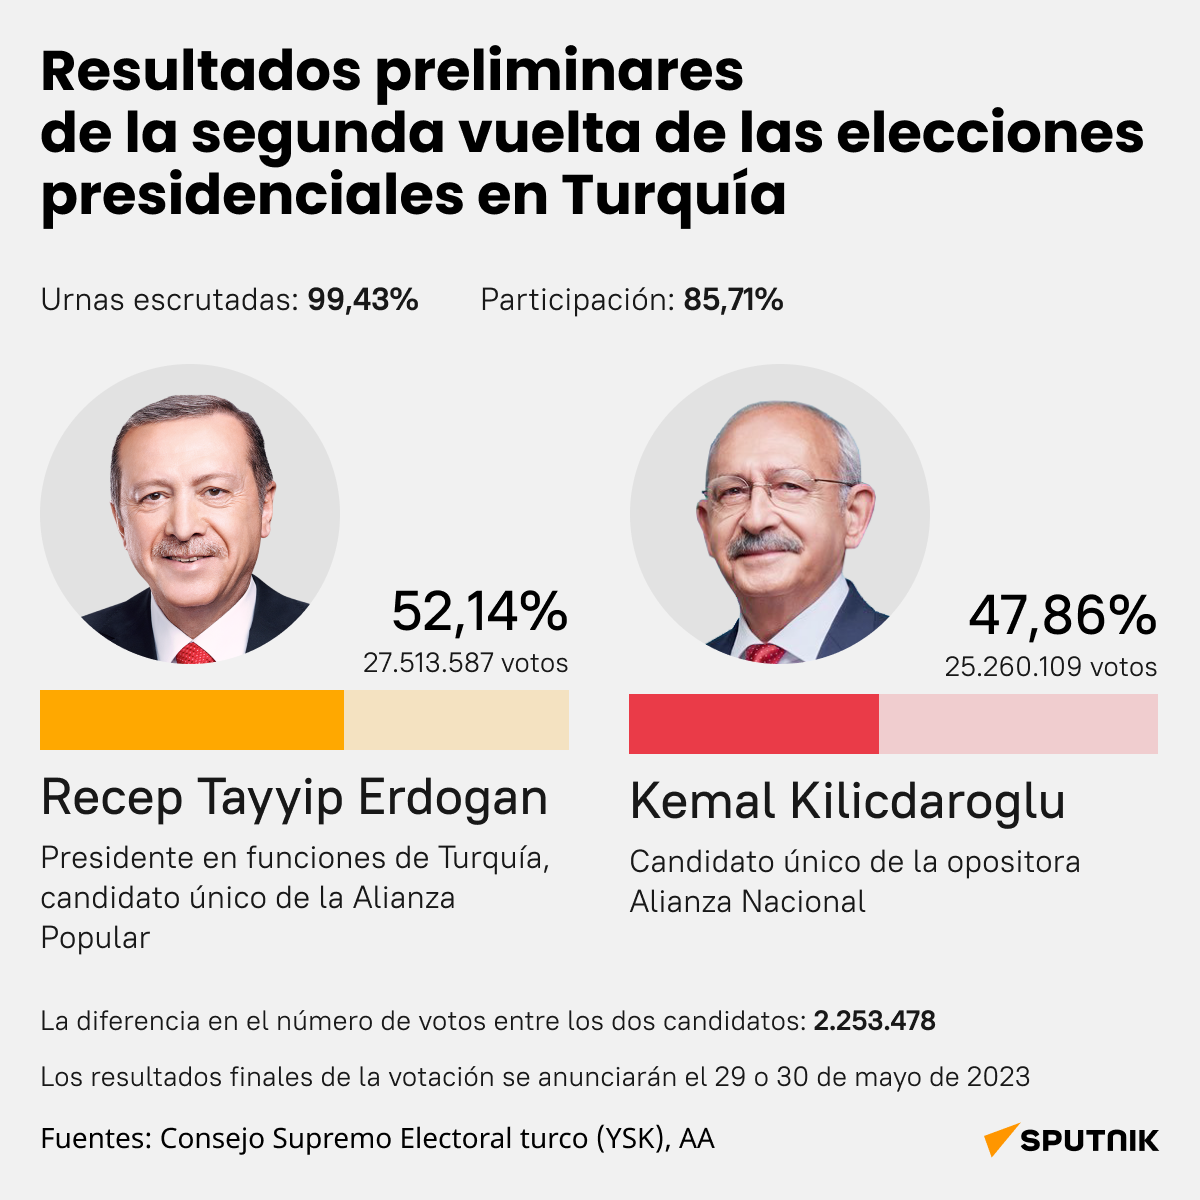 Resultados preliminares de la segunda vuelta de las elecciones presidenciales en Turquía (desk) - Sputnik Mundo